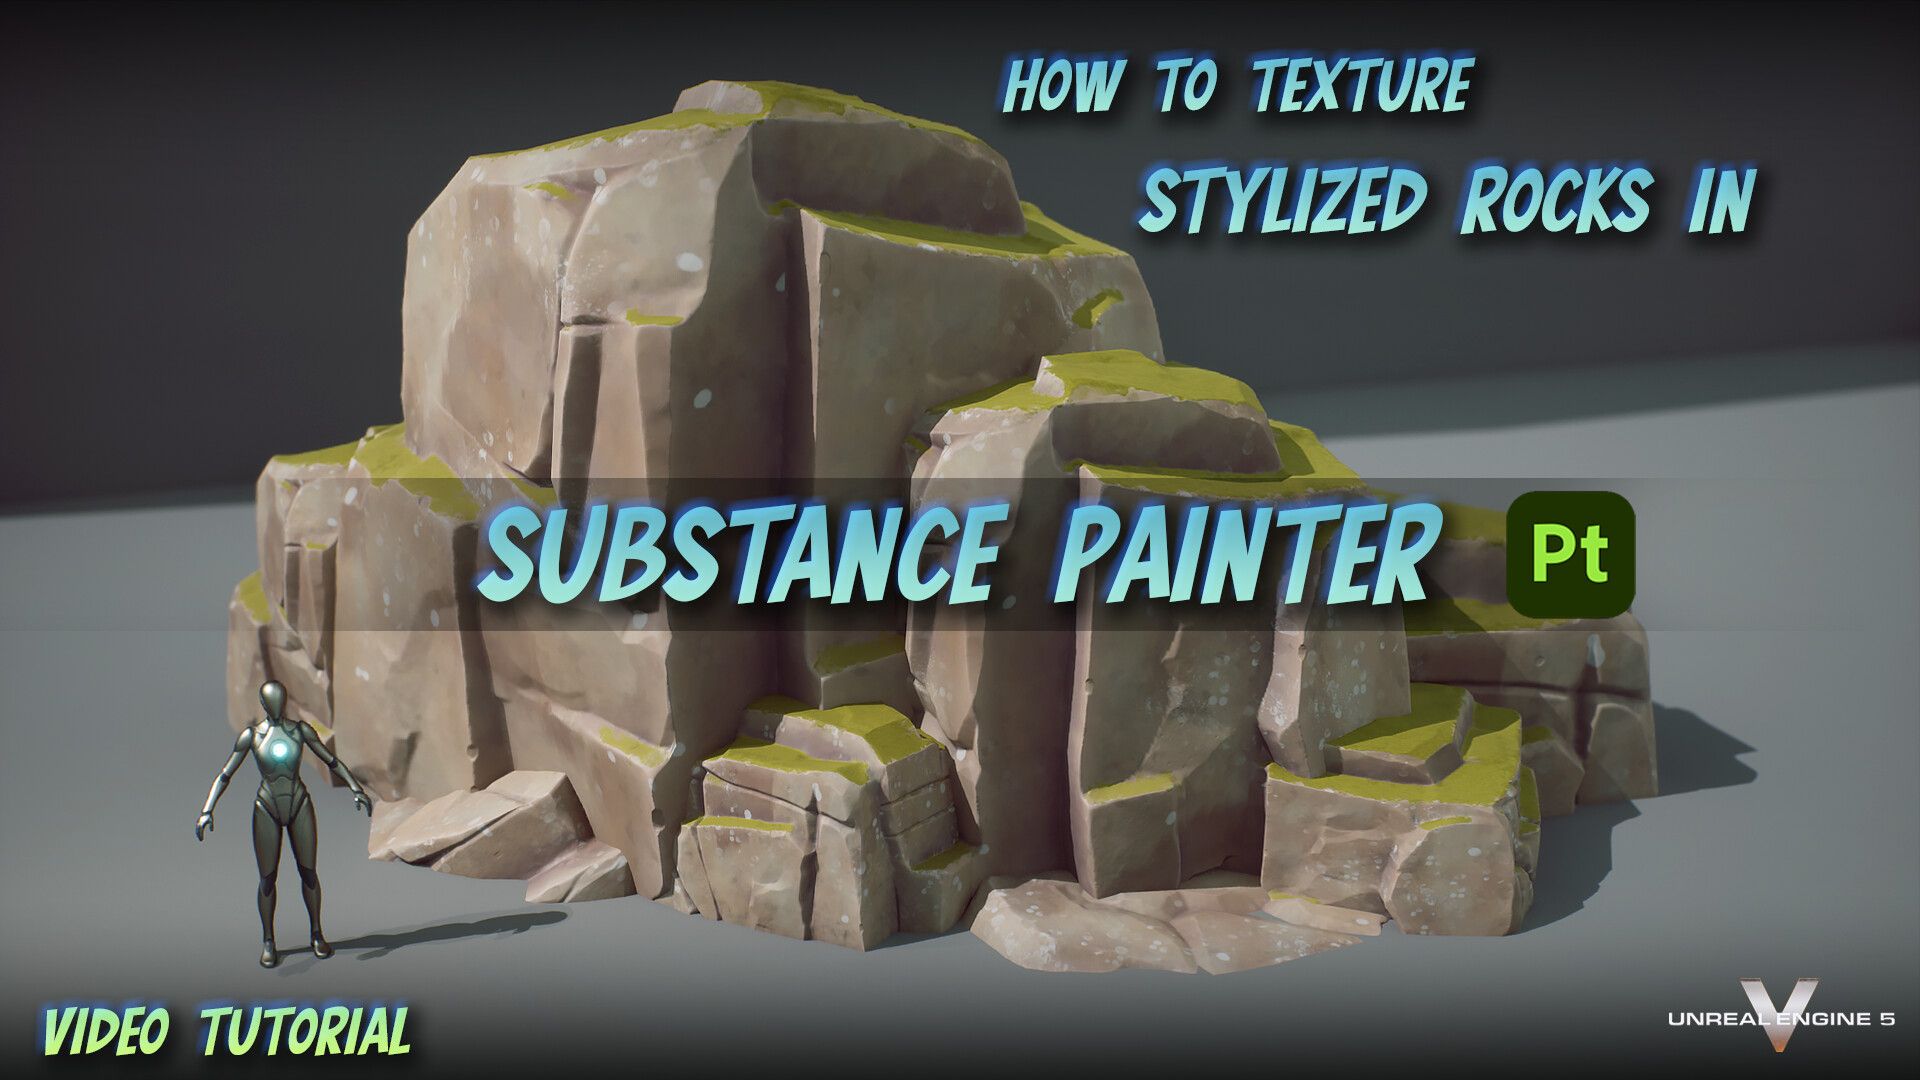 Скачать - artstation. Как текстурировать стилизованные камни в Substance Painter (2022).jpg